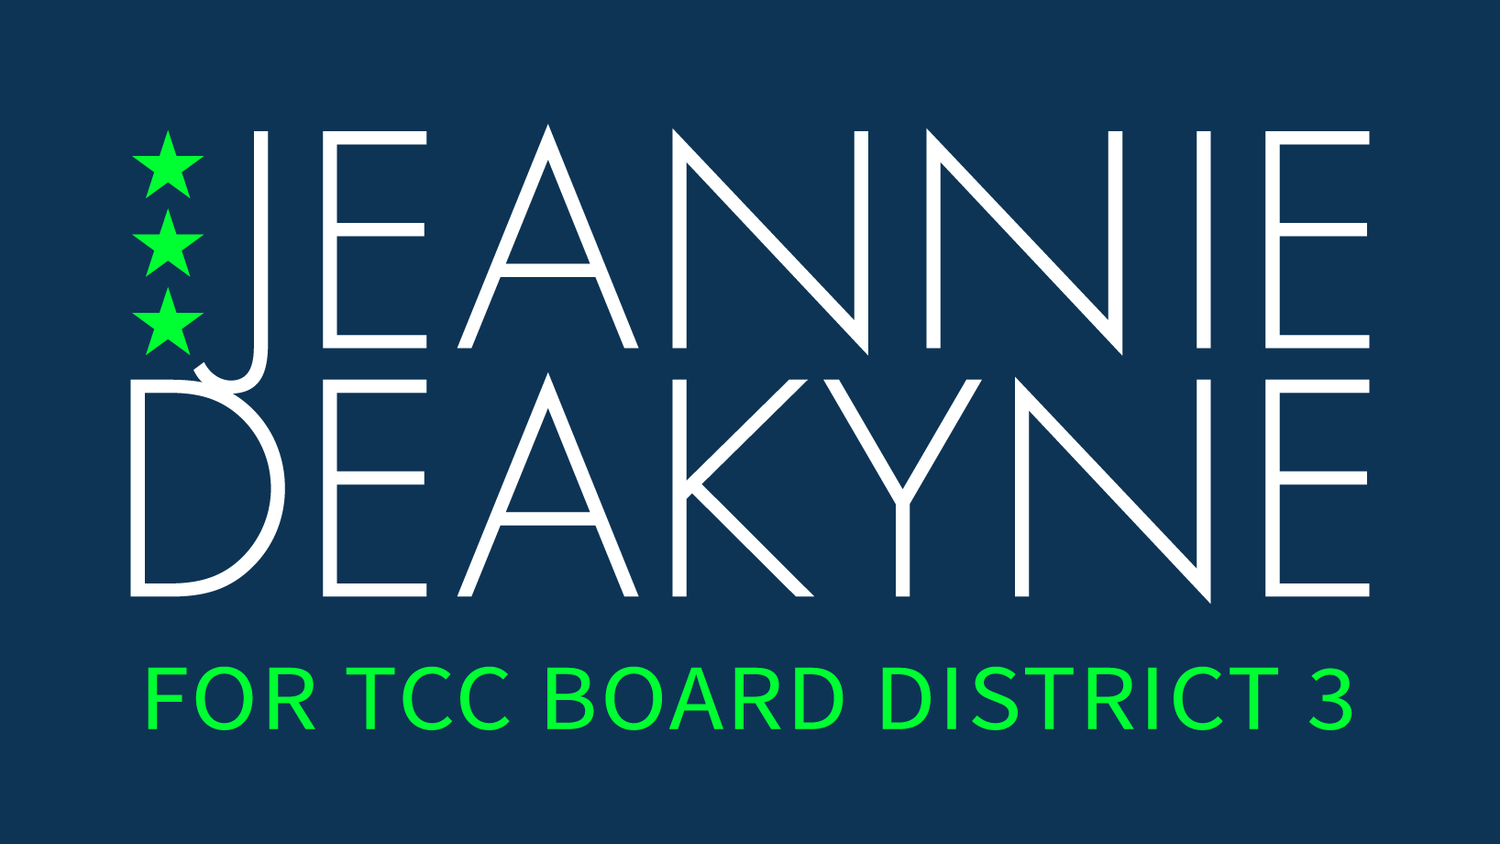 Jeannie Deakyne for TCC Board District 3